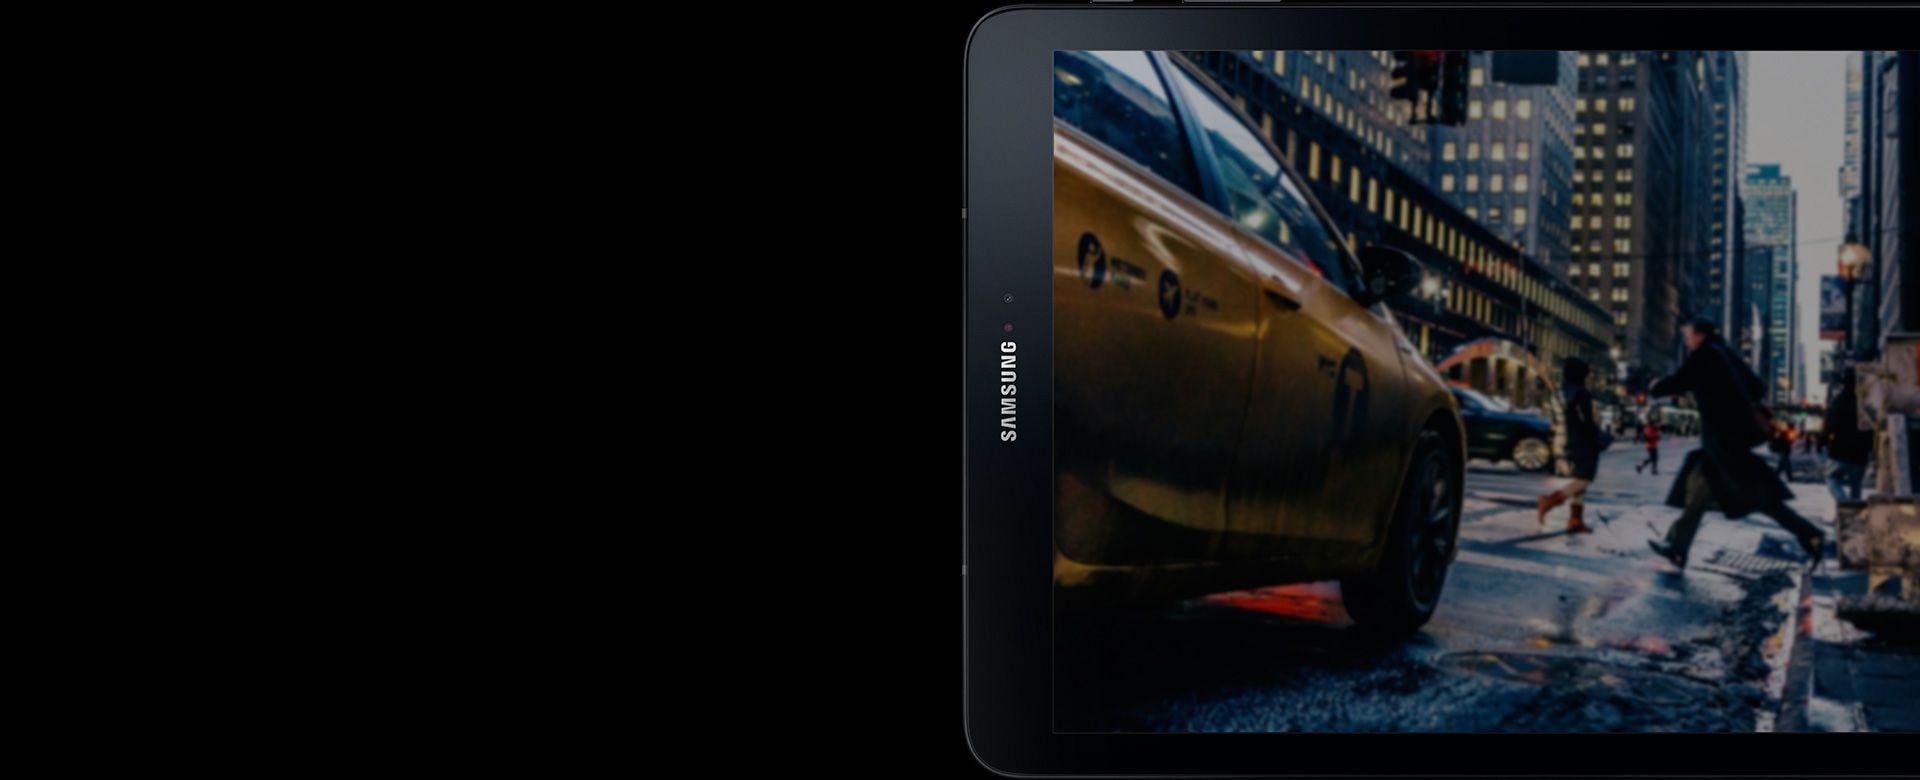 Galaxy Tab S3 postavljen bočno sa slikom žutog taksija u centru grada